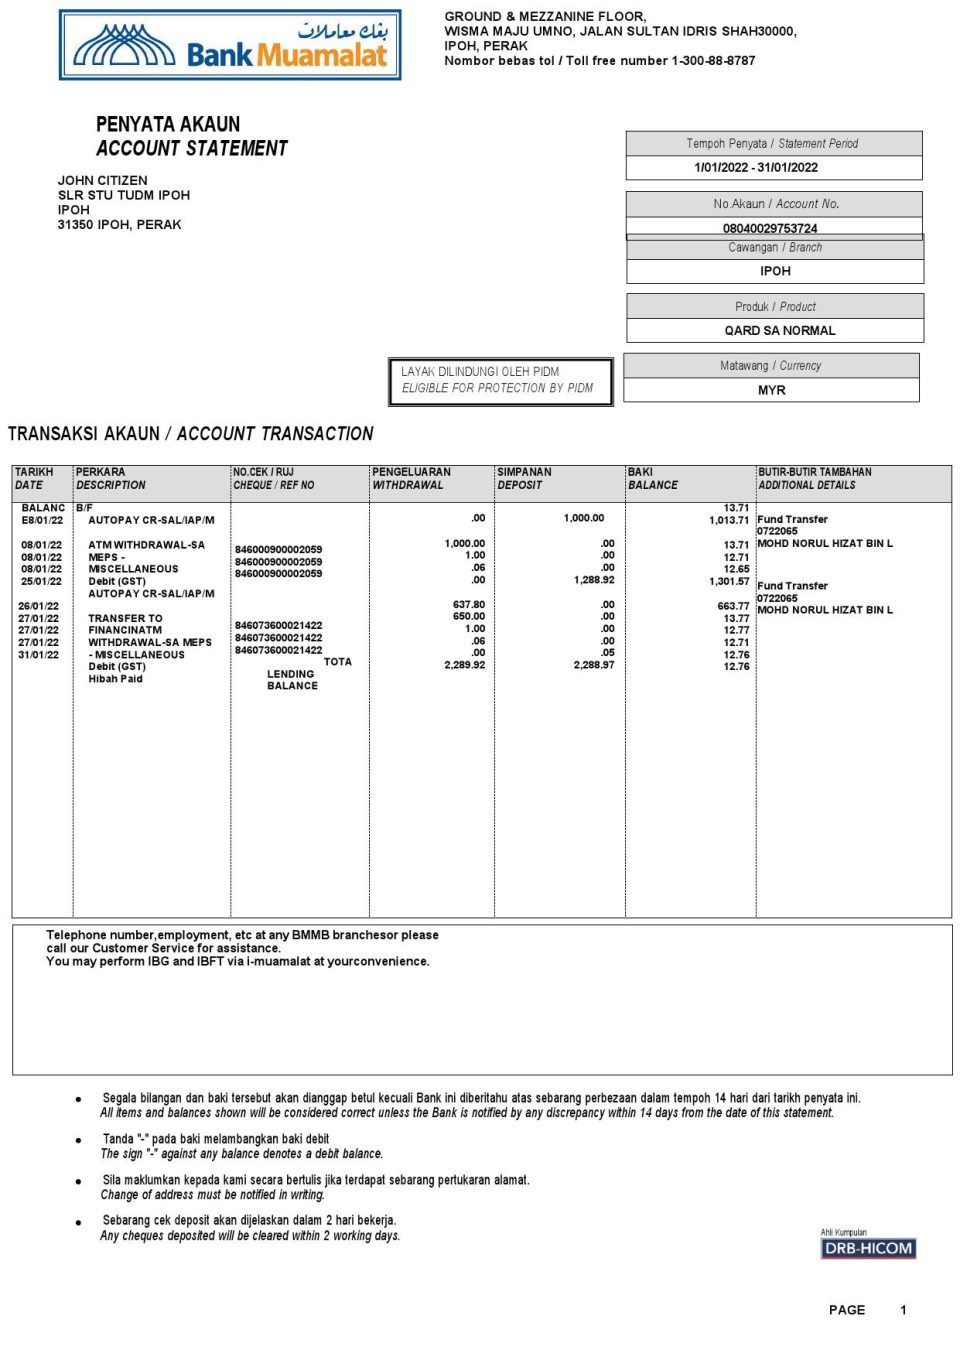 Malaysia Bank Muamalat bank account statement, Word and PDF template